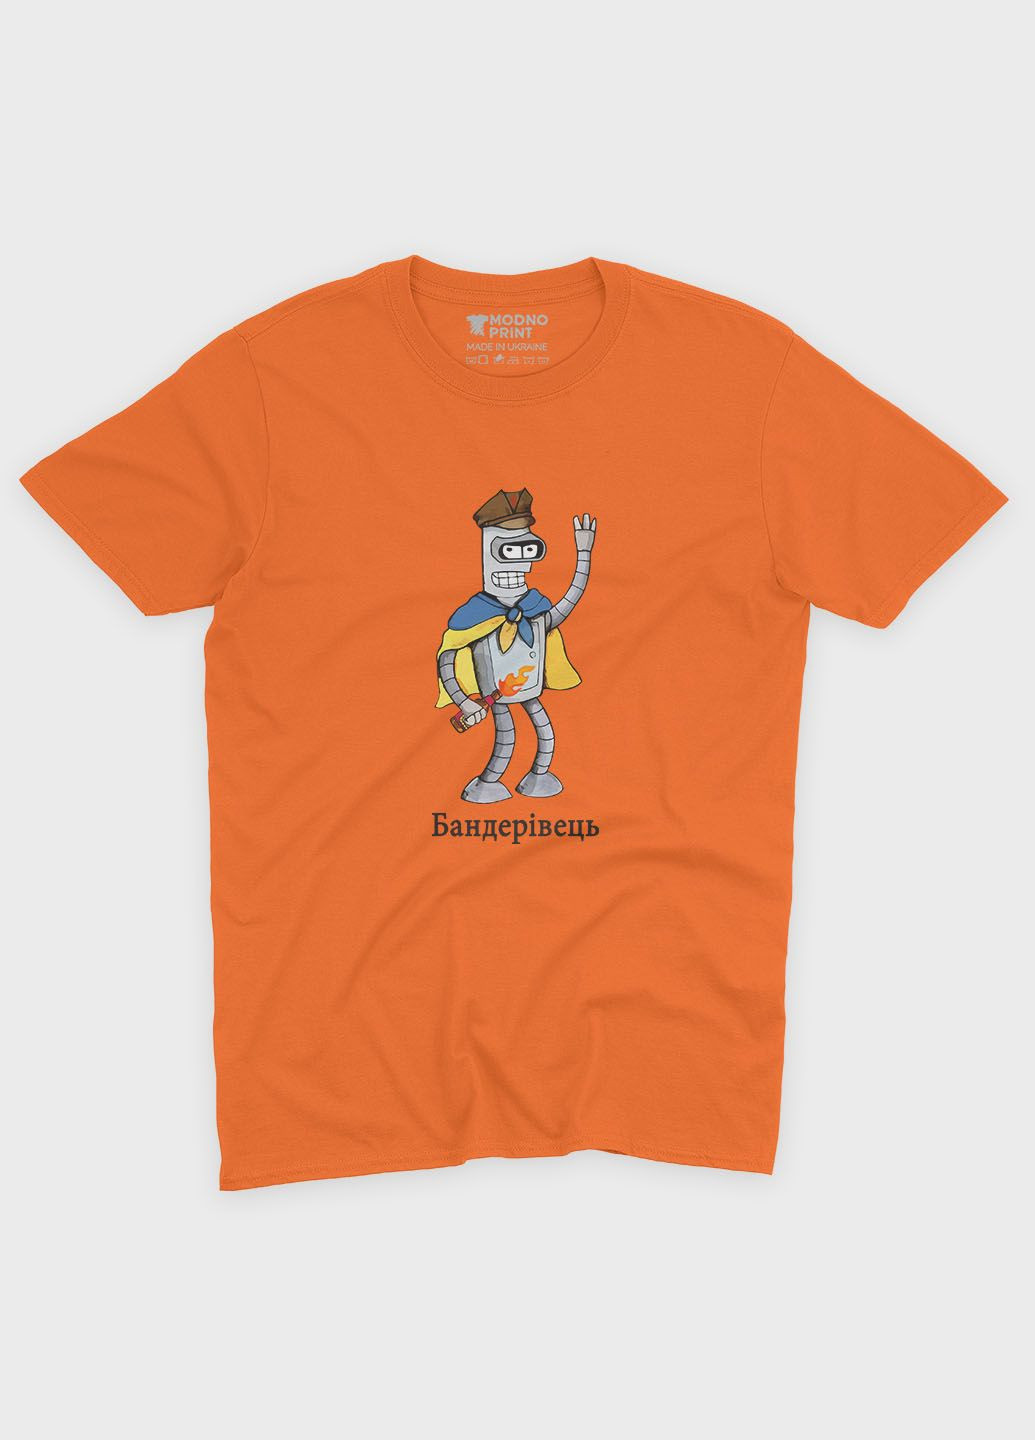 Оранжевая демисезонная футболка для мальчика с патриотическим принтом бандеровец (ts001-4-ora-005-1-095-b) Modno